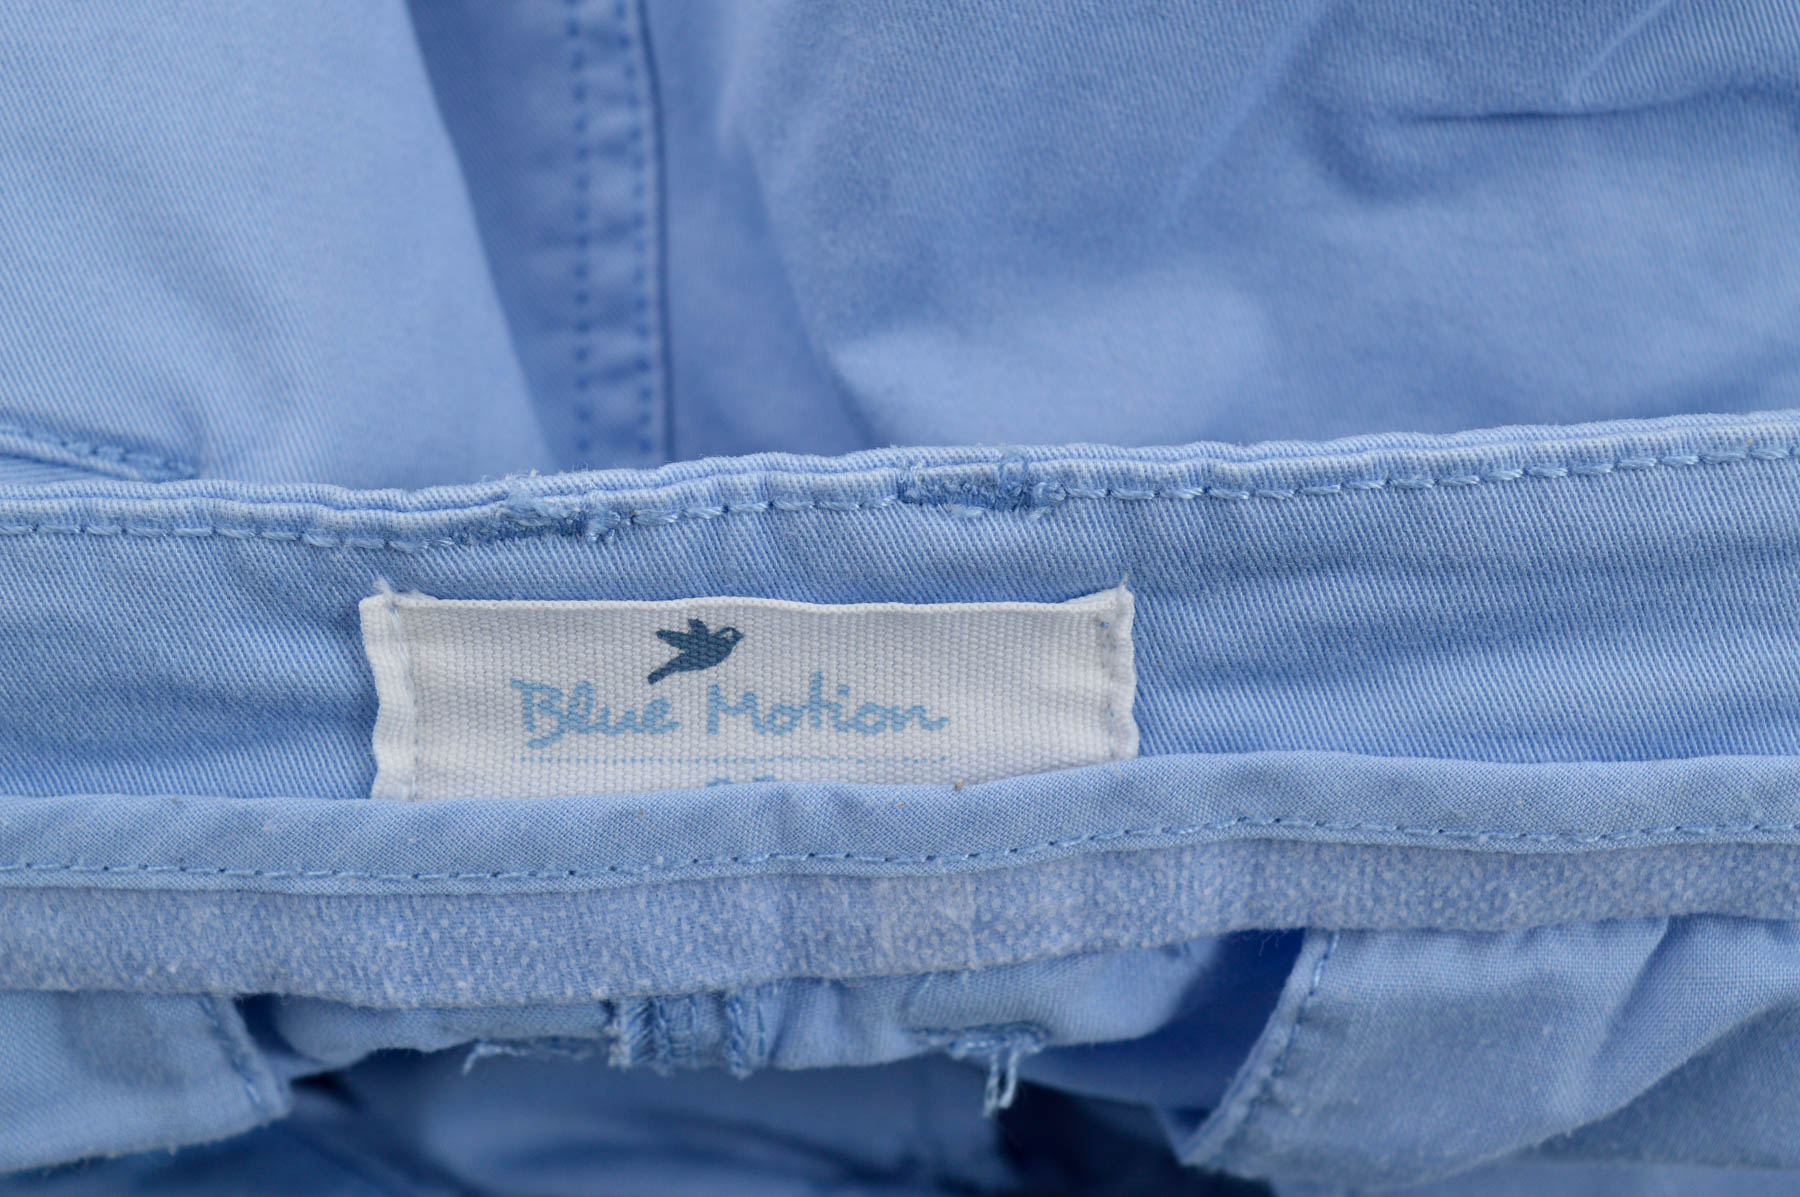 Women's trousers - Blue Motion - 2